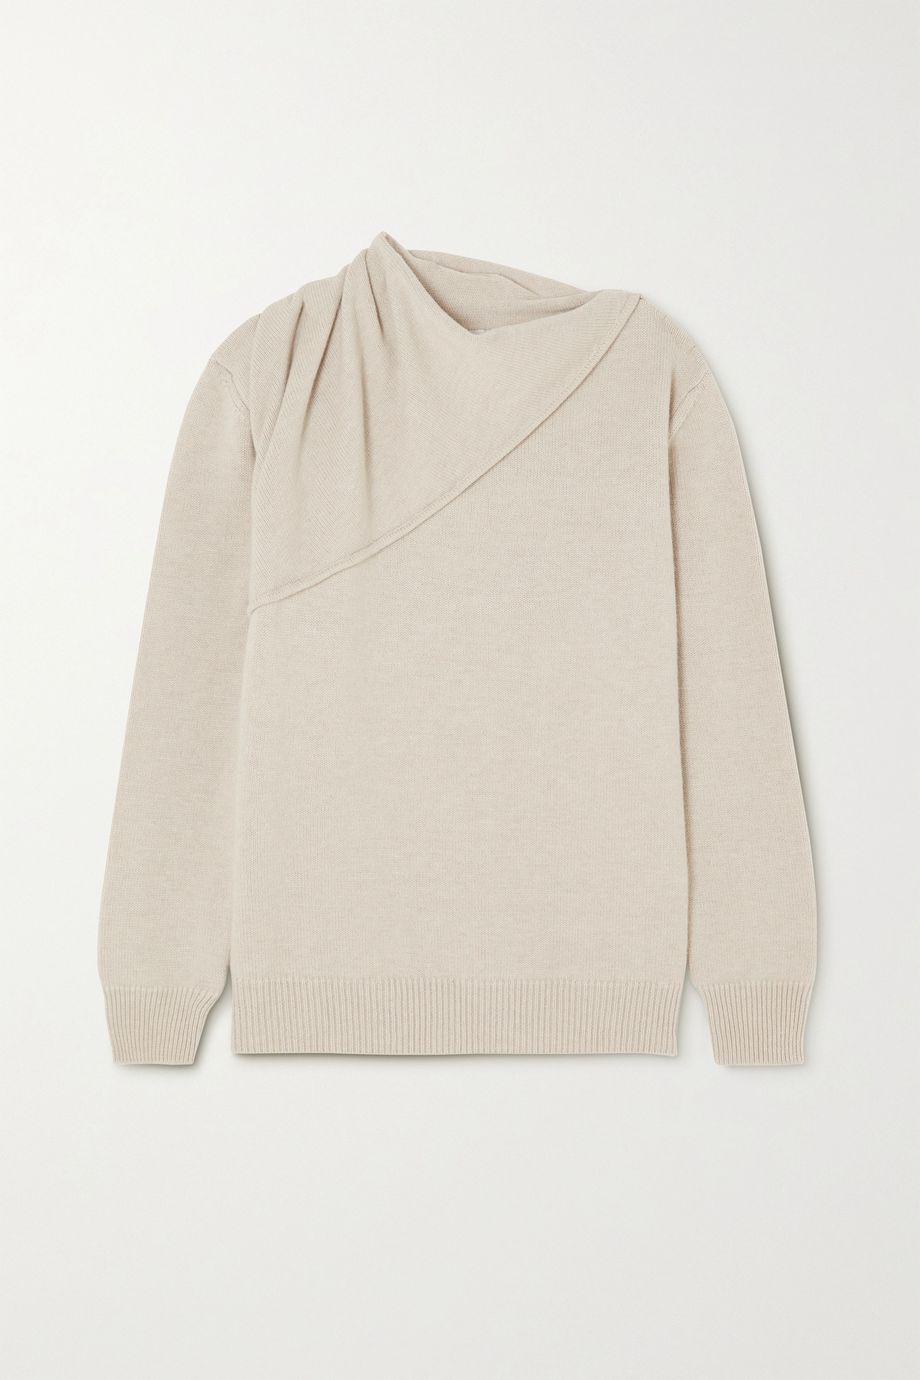 Draped layered merino wool sweater by CAES